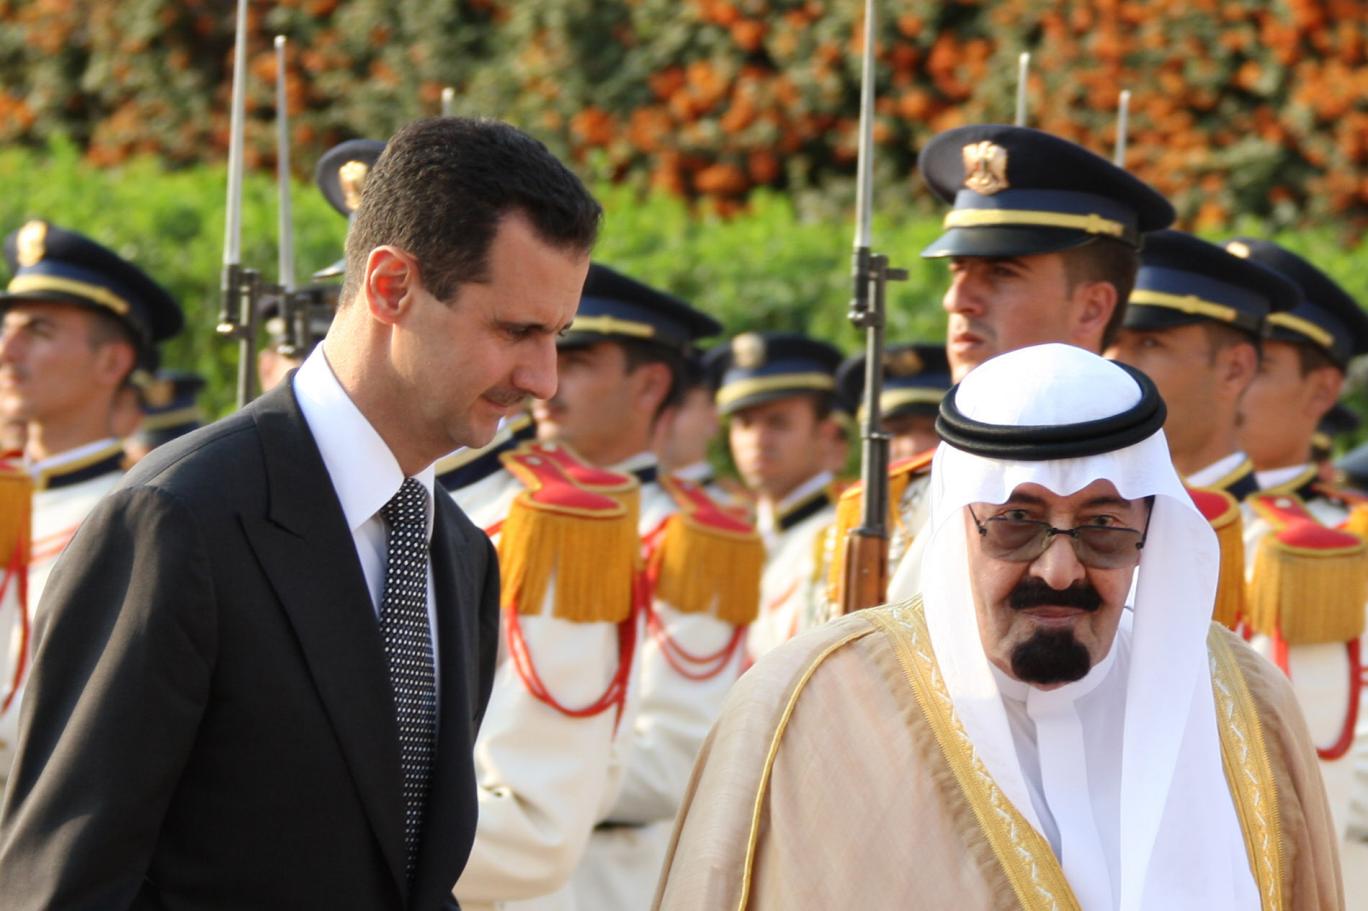 الملك عبدالله استدعى بشار الأسد بعد مقتل الحريري وقال له “أنت كذاب” ونرفض الاتهام بتدمير سوريا